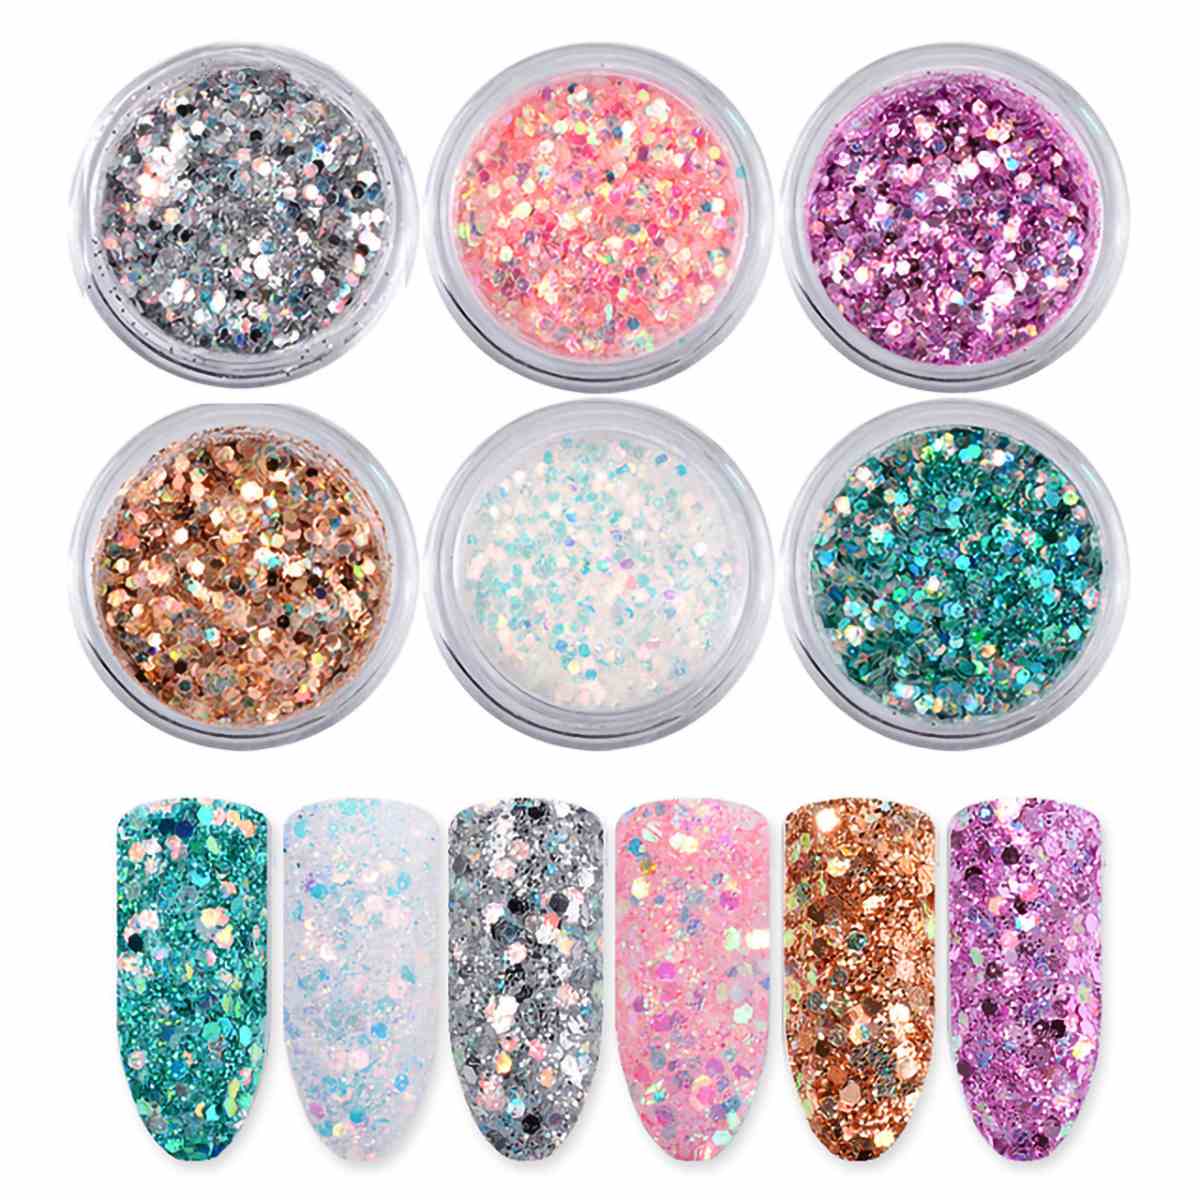 Brillantina (Glitter) de uñas holográfico 6 colores